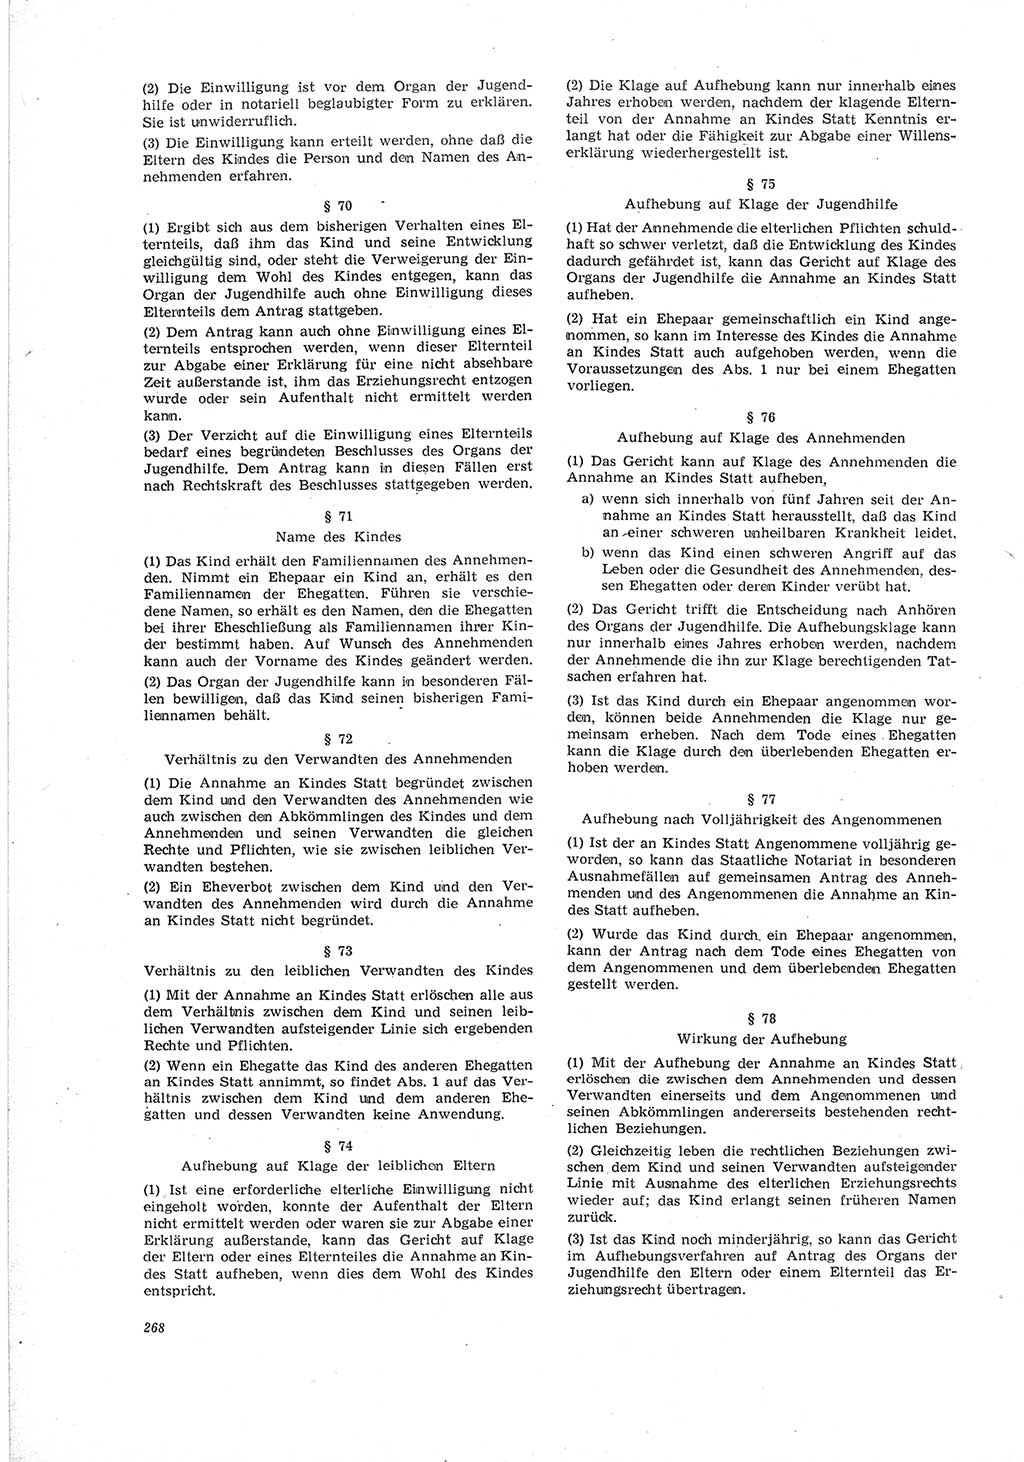 Neue Justiz (NJ), Zeitschrift für Recht und Rechtswissenschaft [Deutsche Demokratische Republik (DDR)], 19. Jahrgang 1965, Seite 268 (NJ DDR 1965, S. 268)